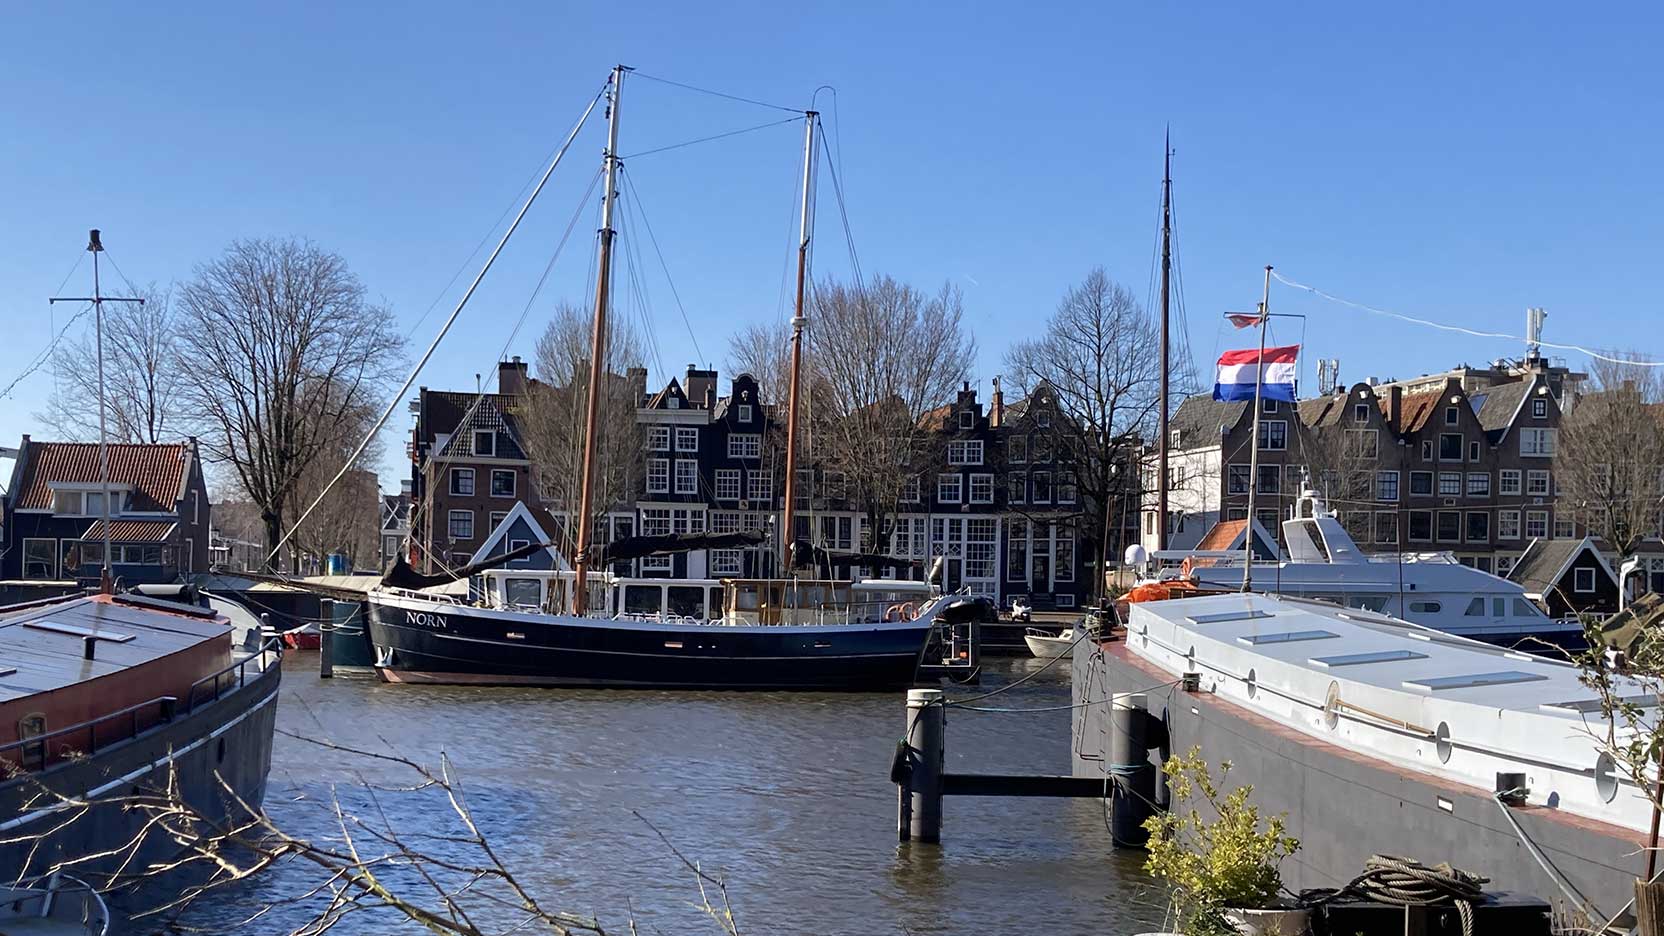 Westerdok, Amsterdam